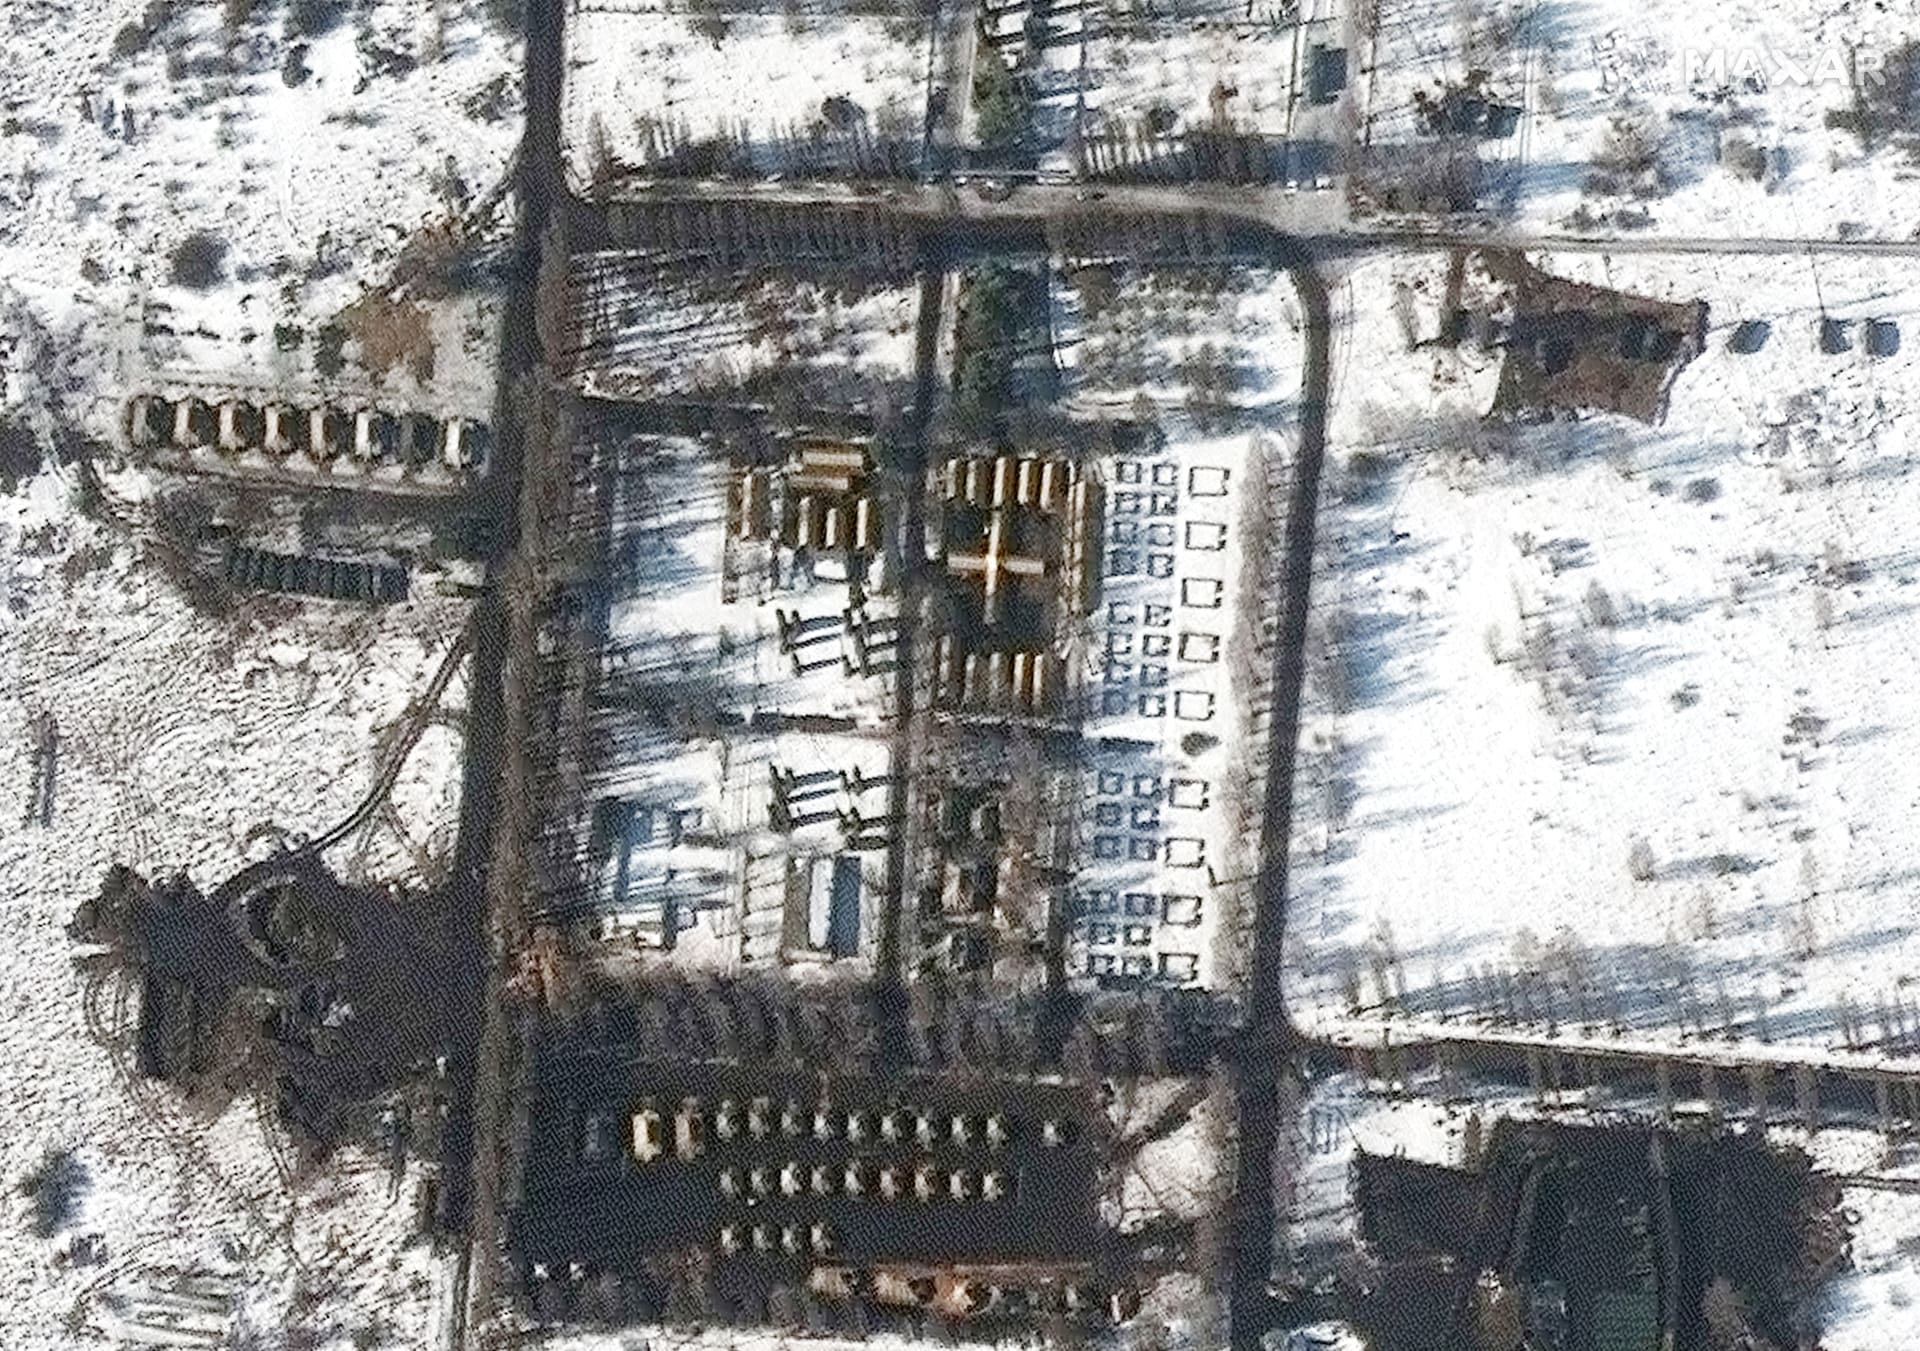 Satelitní snímky ukazují, že ve venkovských oblastech jihozápadně od Bělgorodu, necelých 20 kilometrů severozápadně od hranic s Ukrajinou, bylo zřízeno několik nových míst rozmístění vojáků a vybavení.